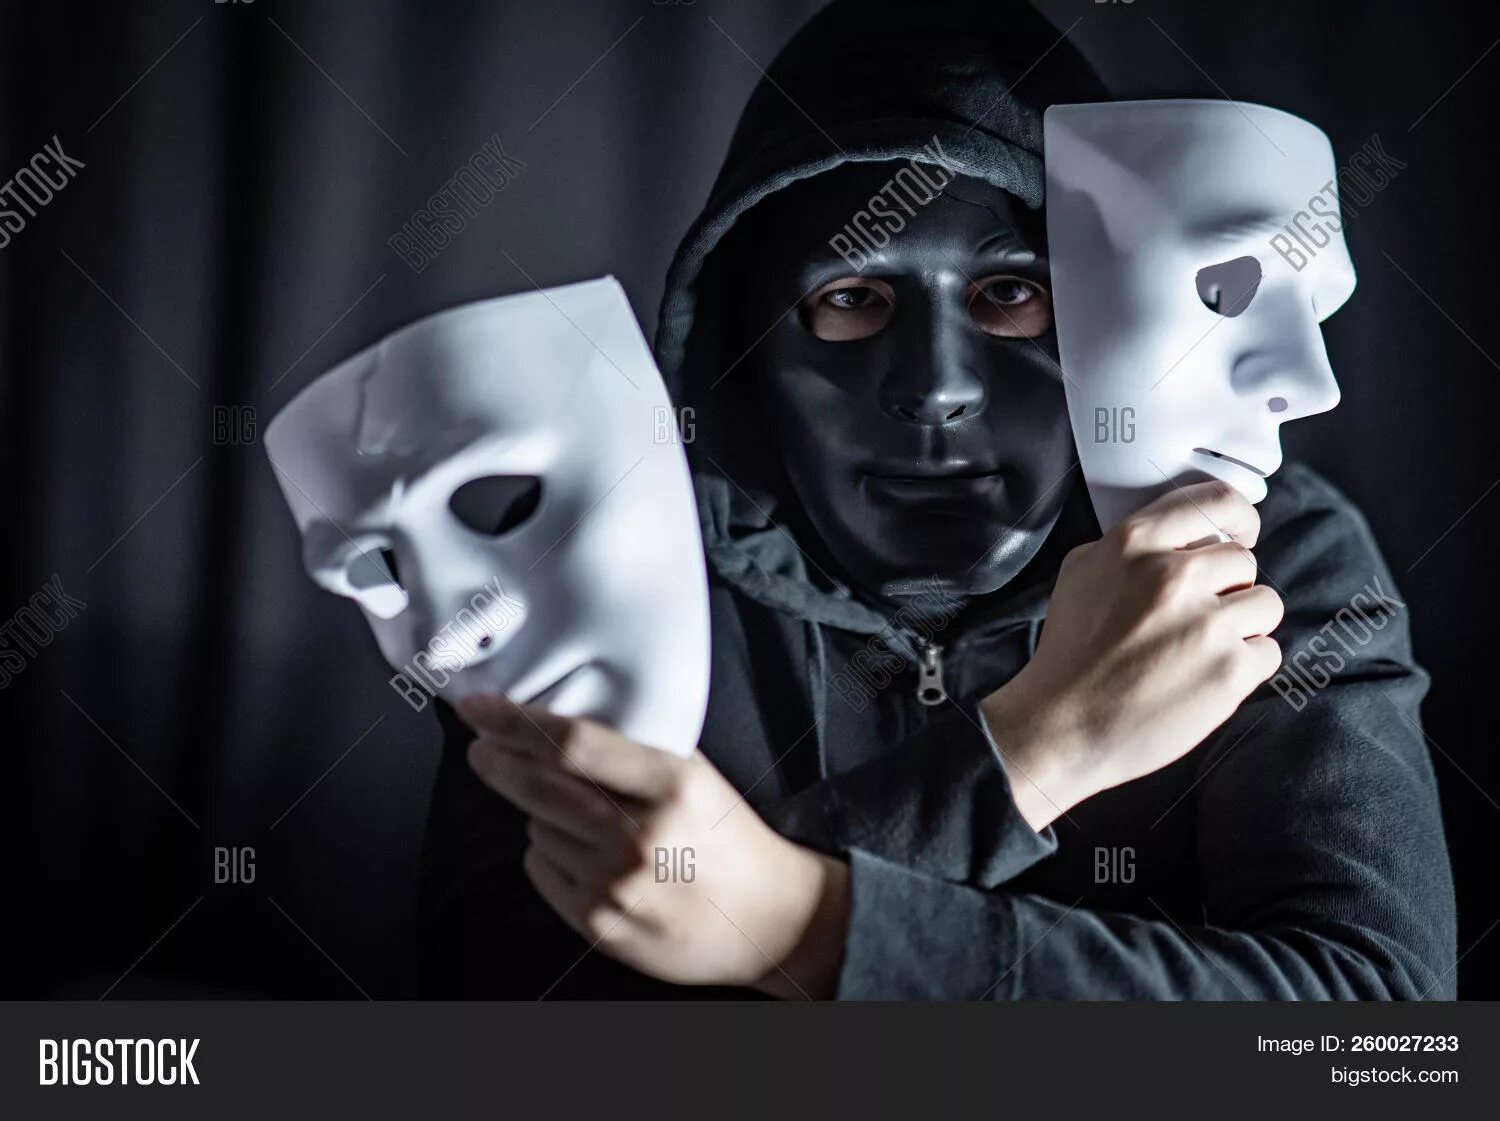 Они надели маски. Человек в маске. Человек надевает маску. Человек в театральной маске. Человек в белой маске.